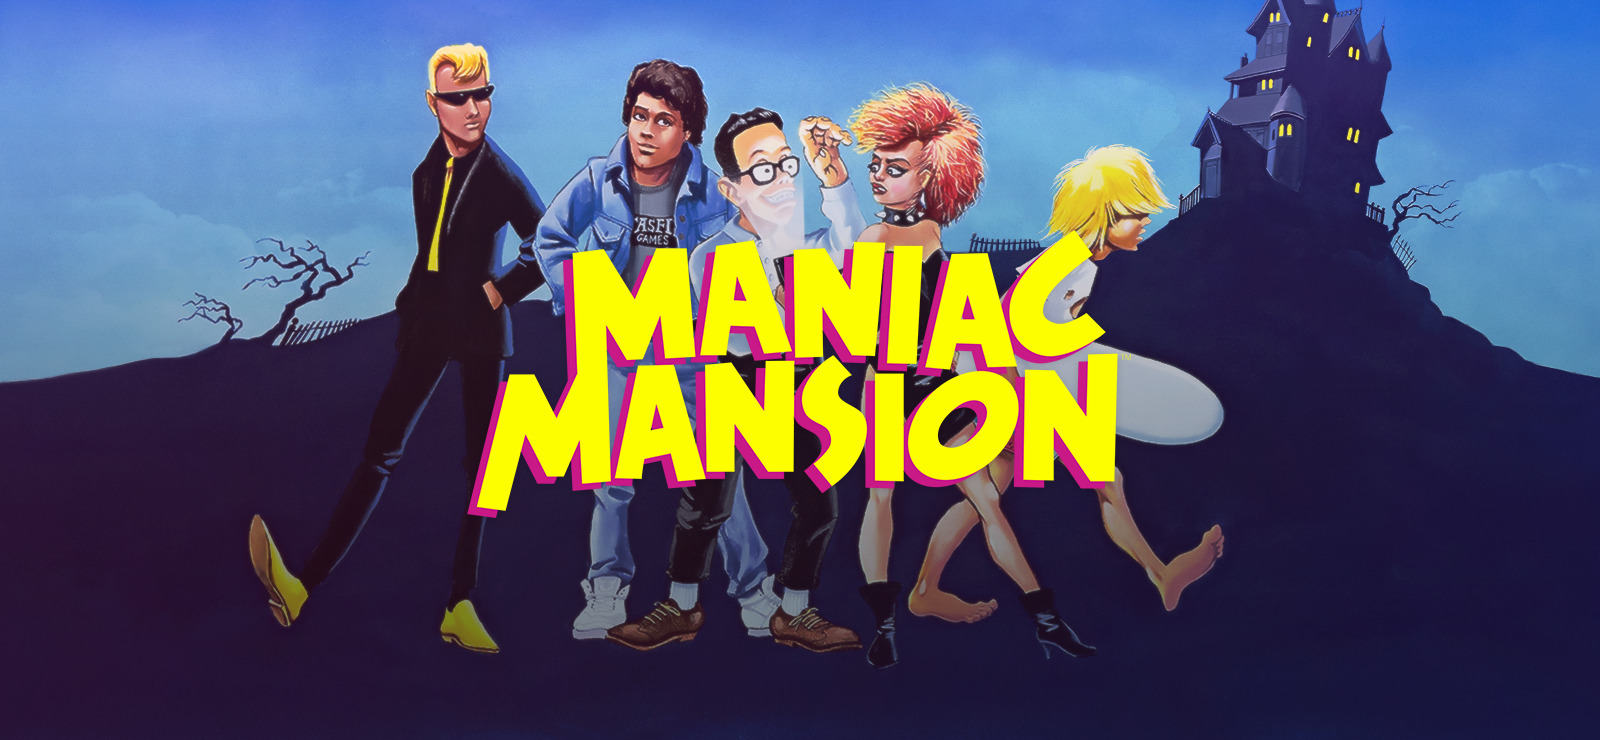 65% Maniac Mansion on GOG.com